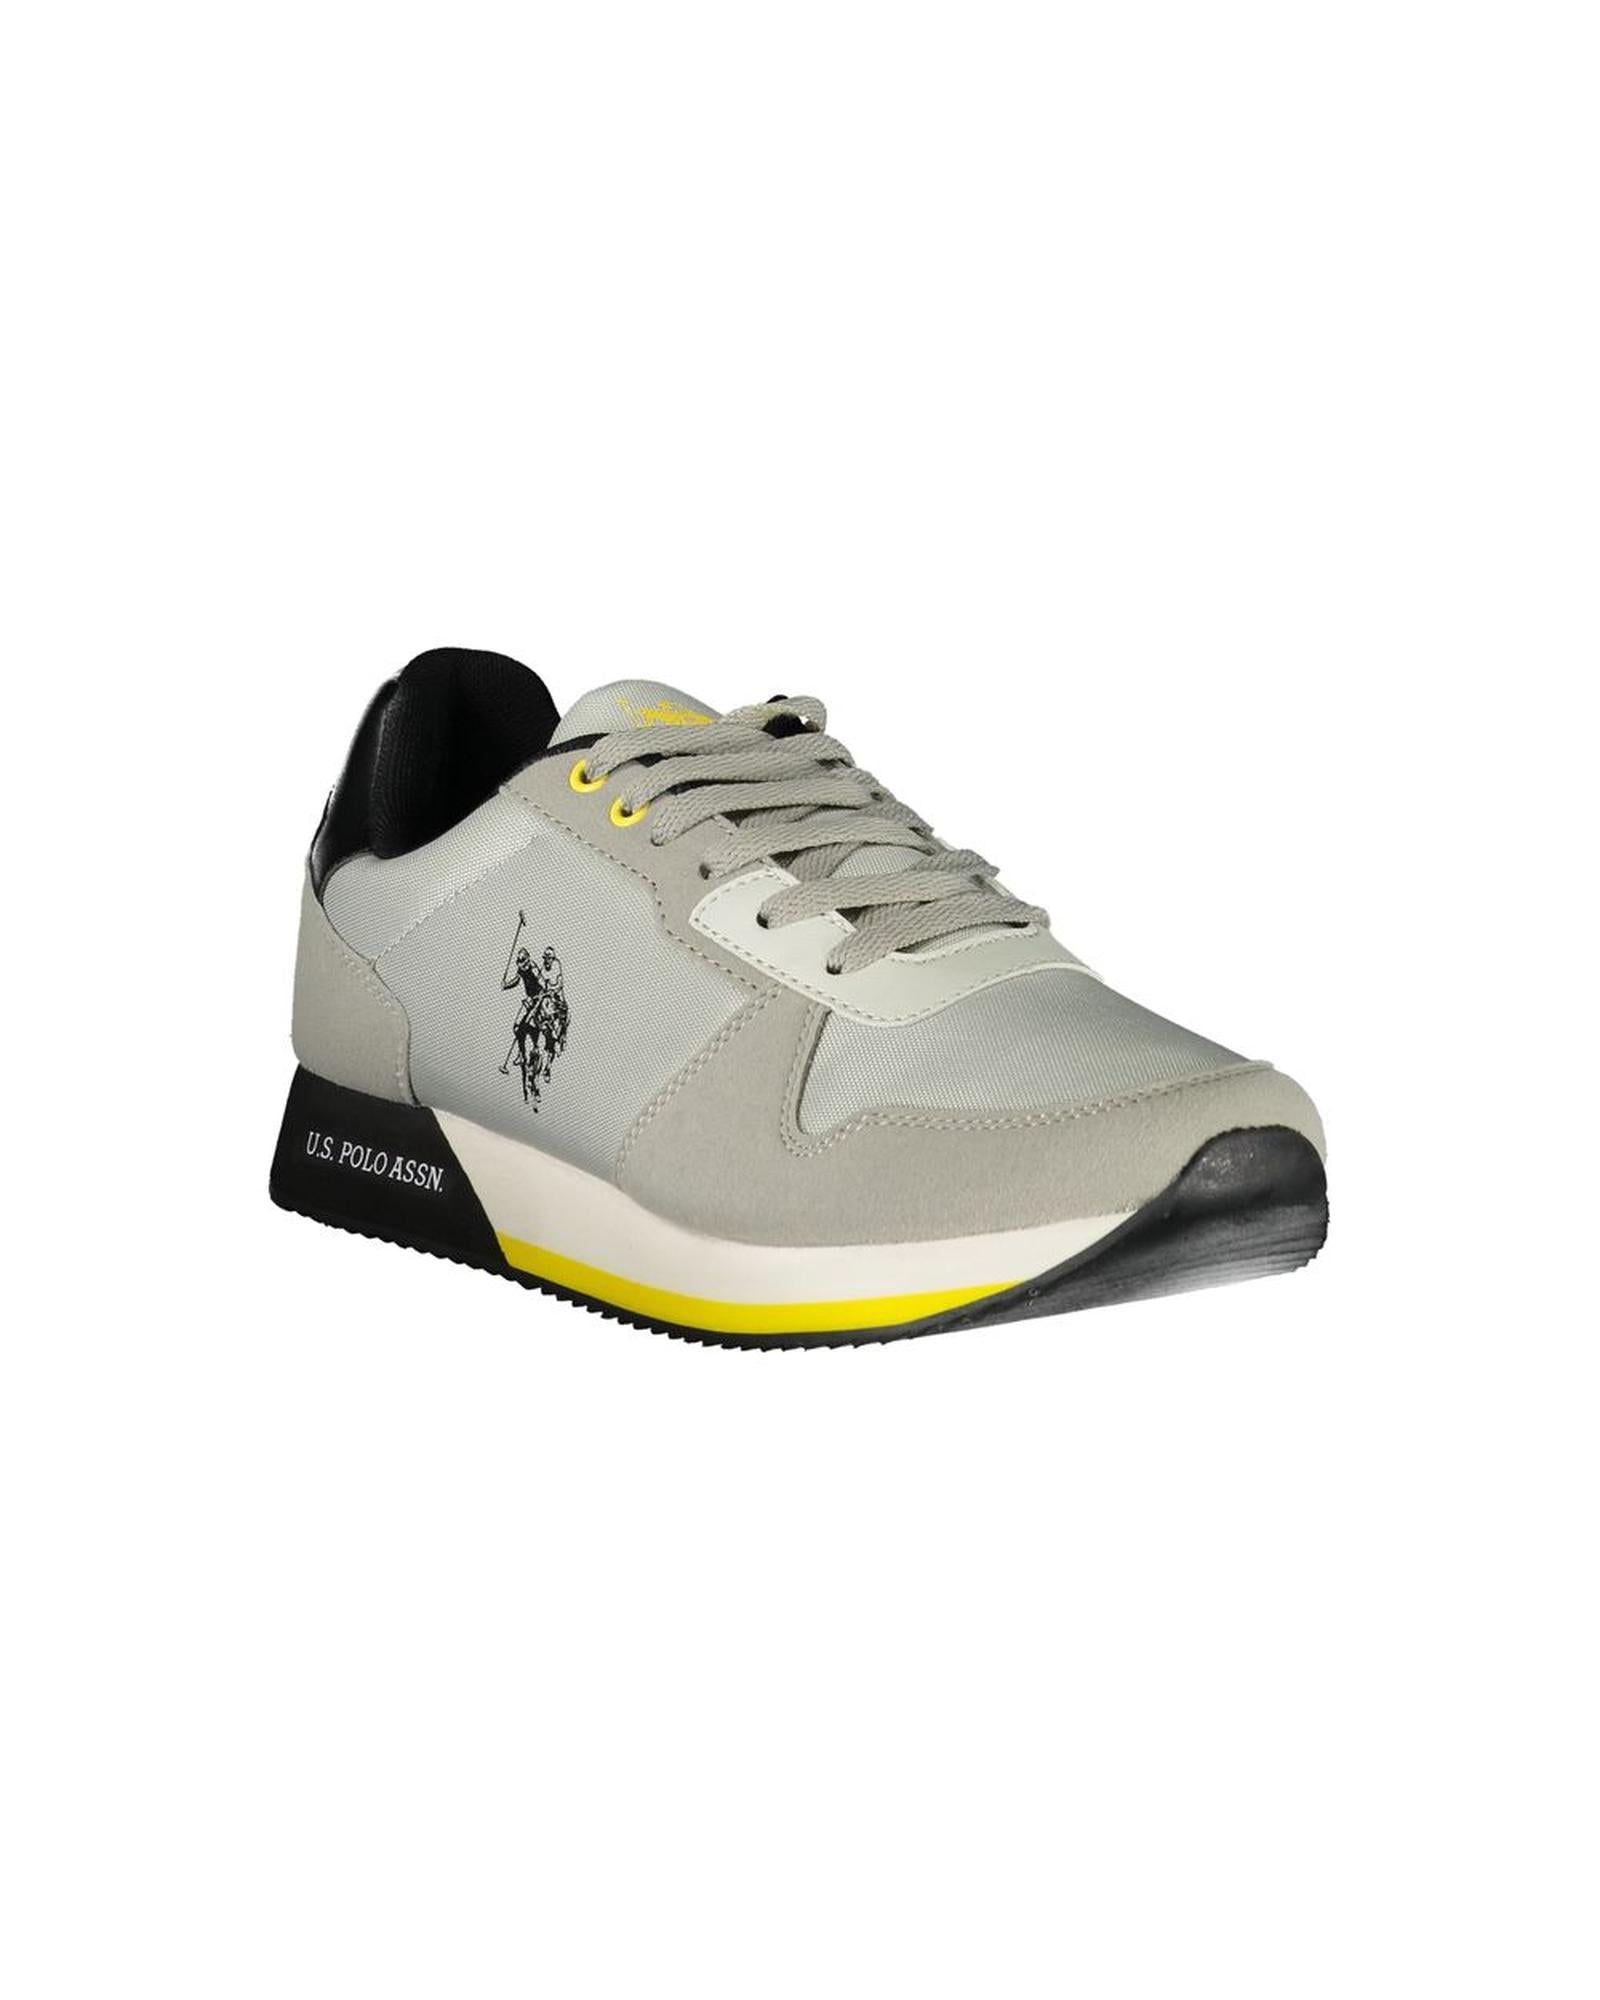 US POLO ASSN Men's Gray Polyester Sneaker - 43 EU